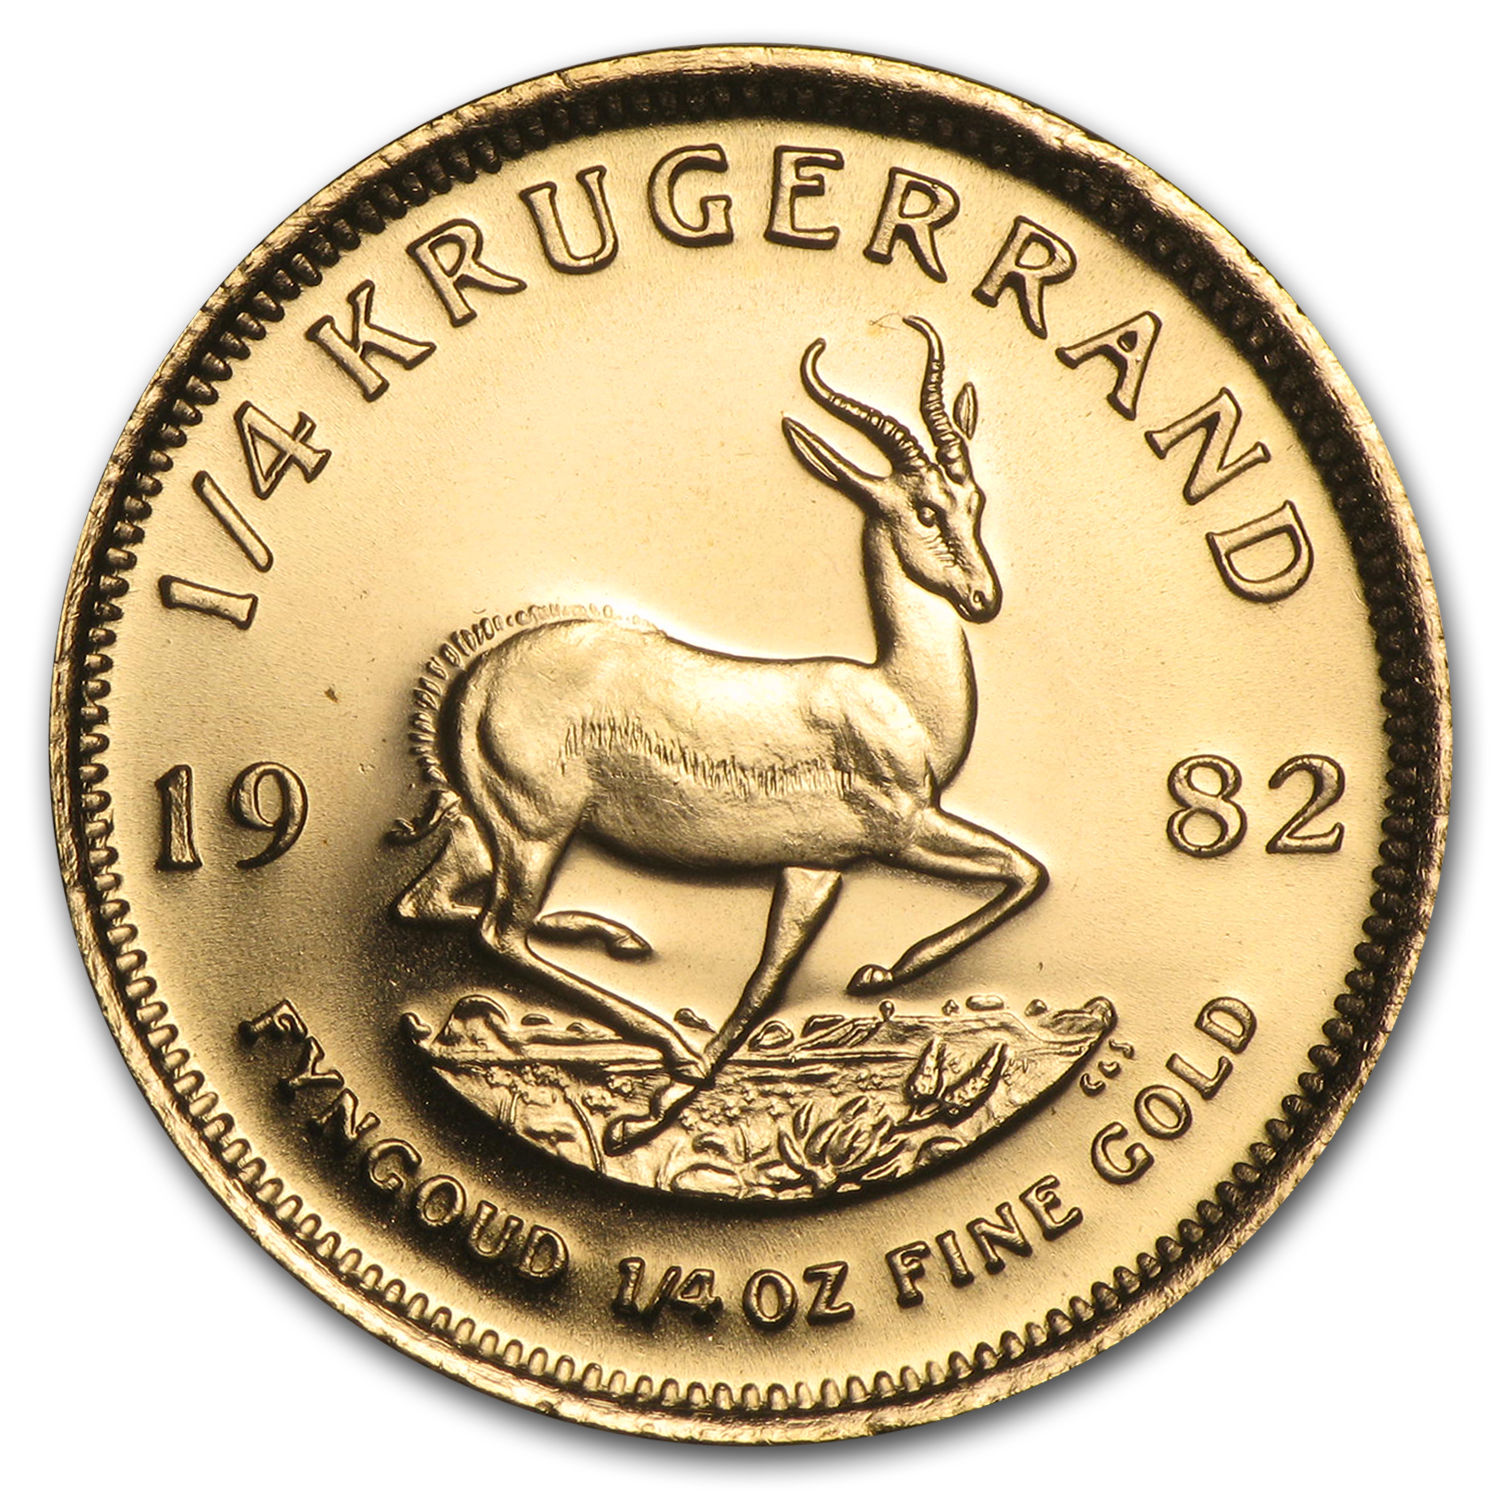 1982 South Africa 1/4 oz Gold Krugerrand - SKU #89440